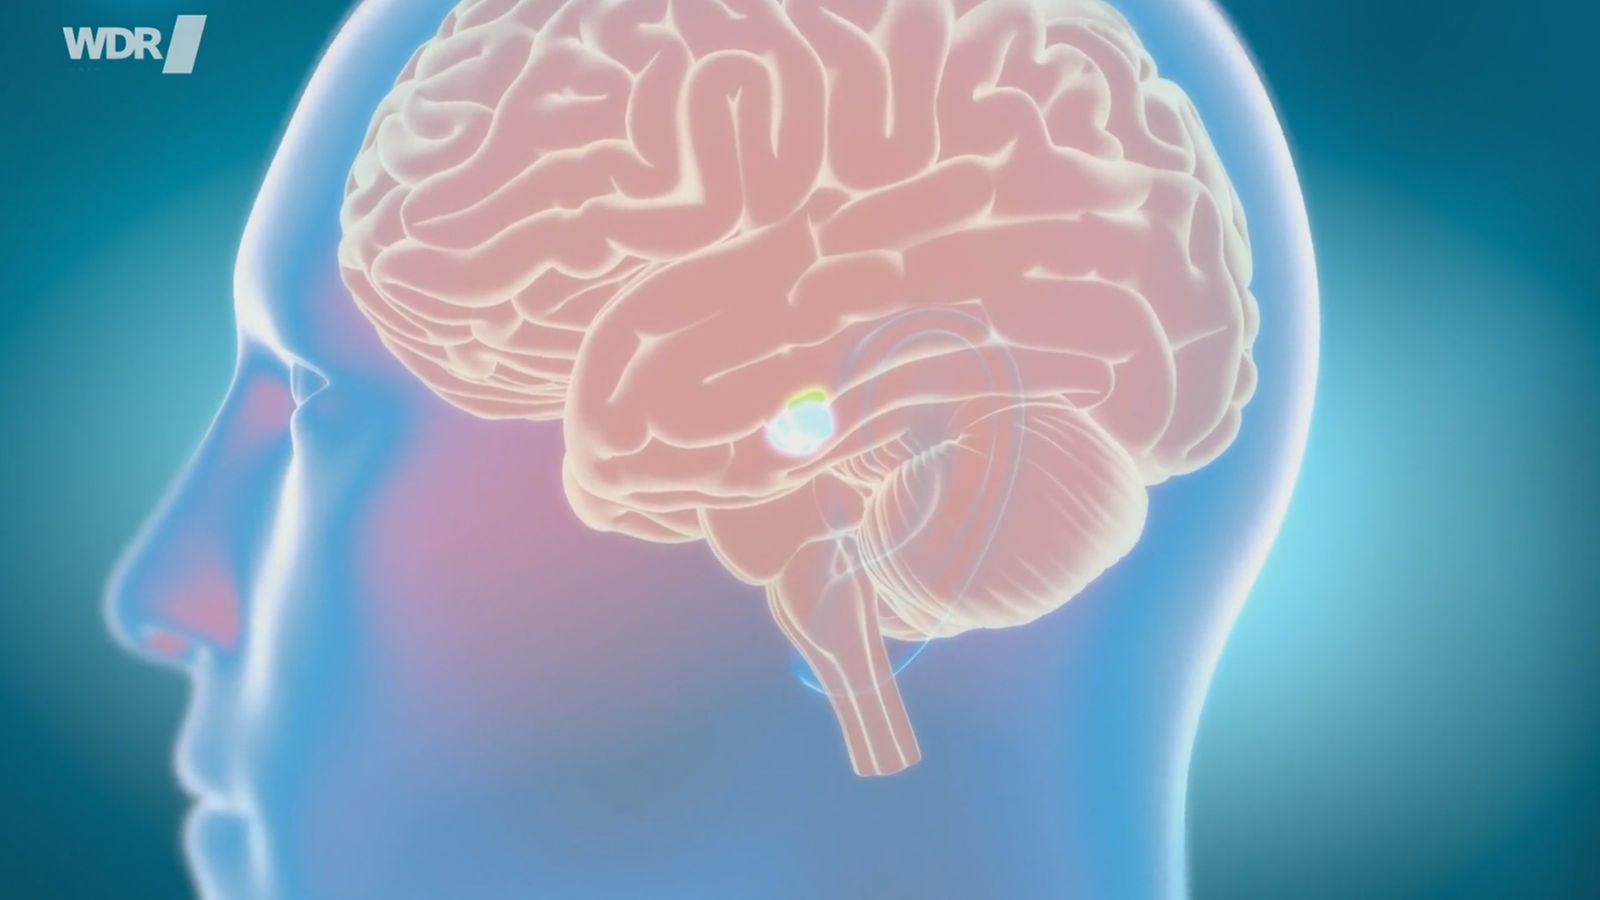 Computergrafik: ein menschlicher Kopf von der Seite, darin ist das Gehirn zu sehen